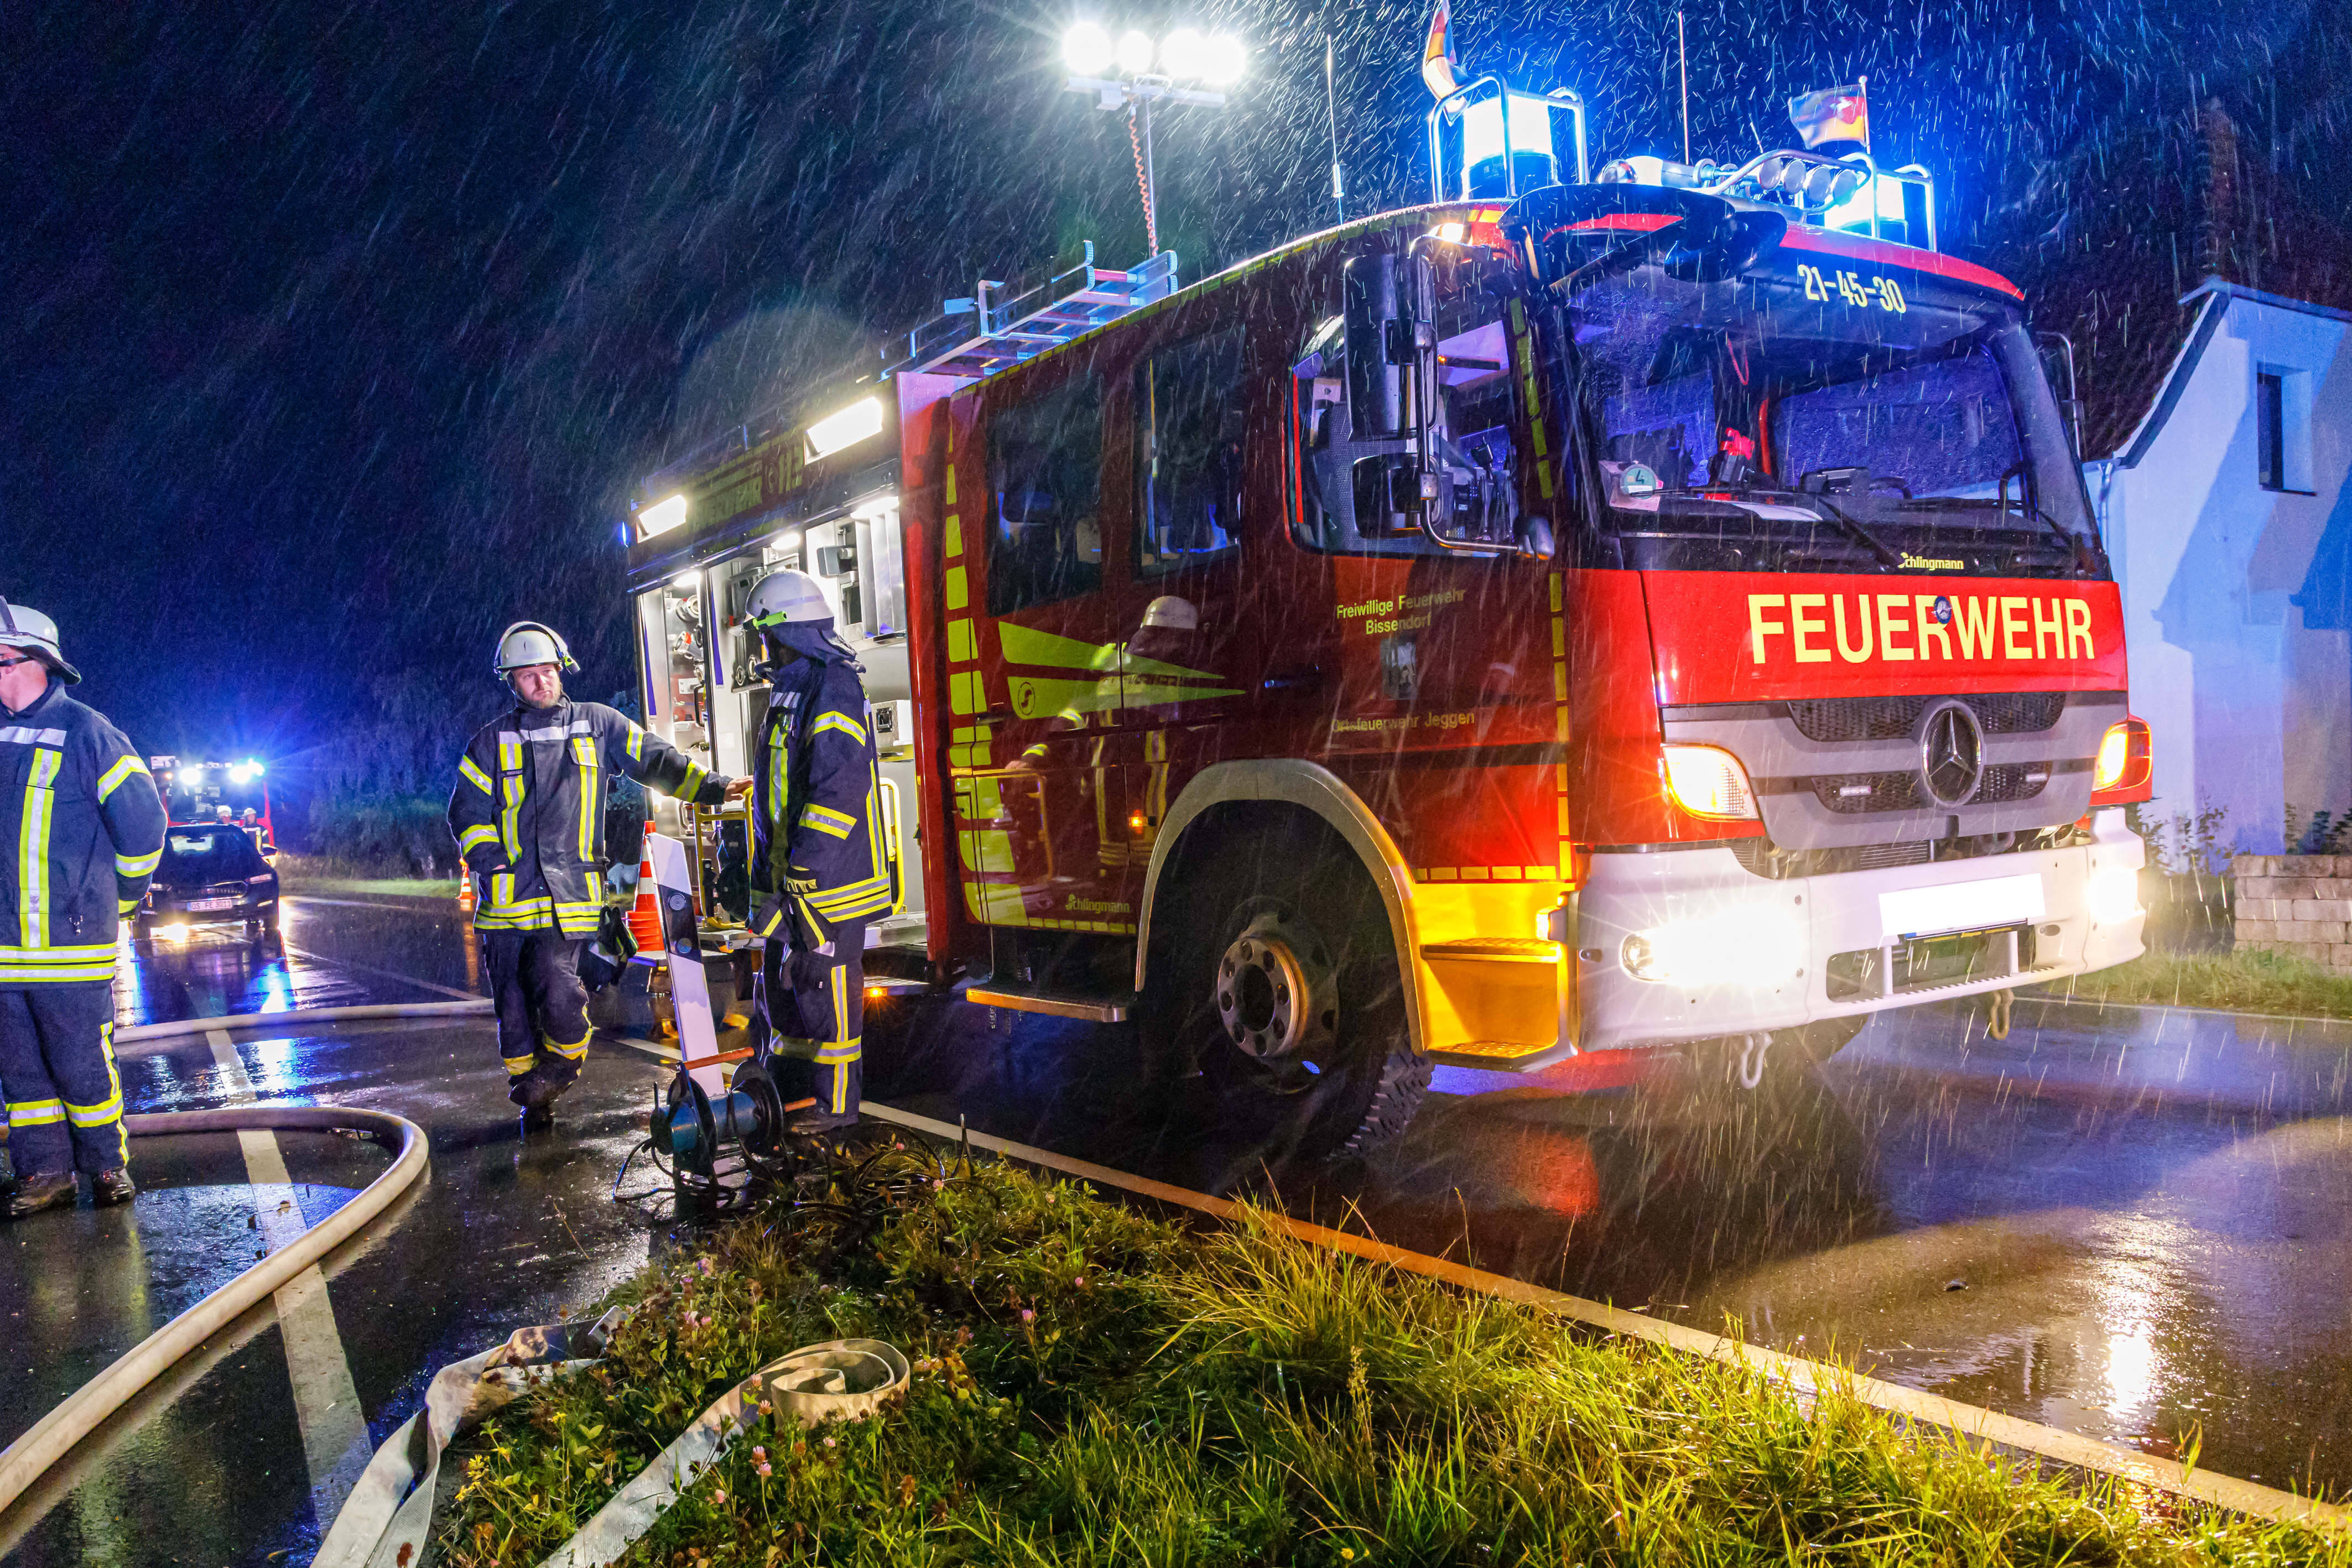 Feuerinferno in Berlin! 17 Menschen aus brennendem Mehrfamilienhaus gerettet - Großeinsatz der Rettungskräfte